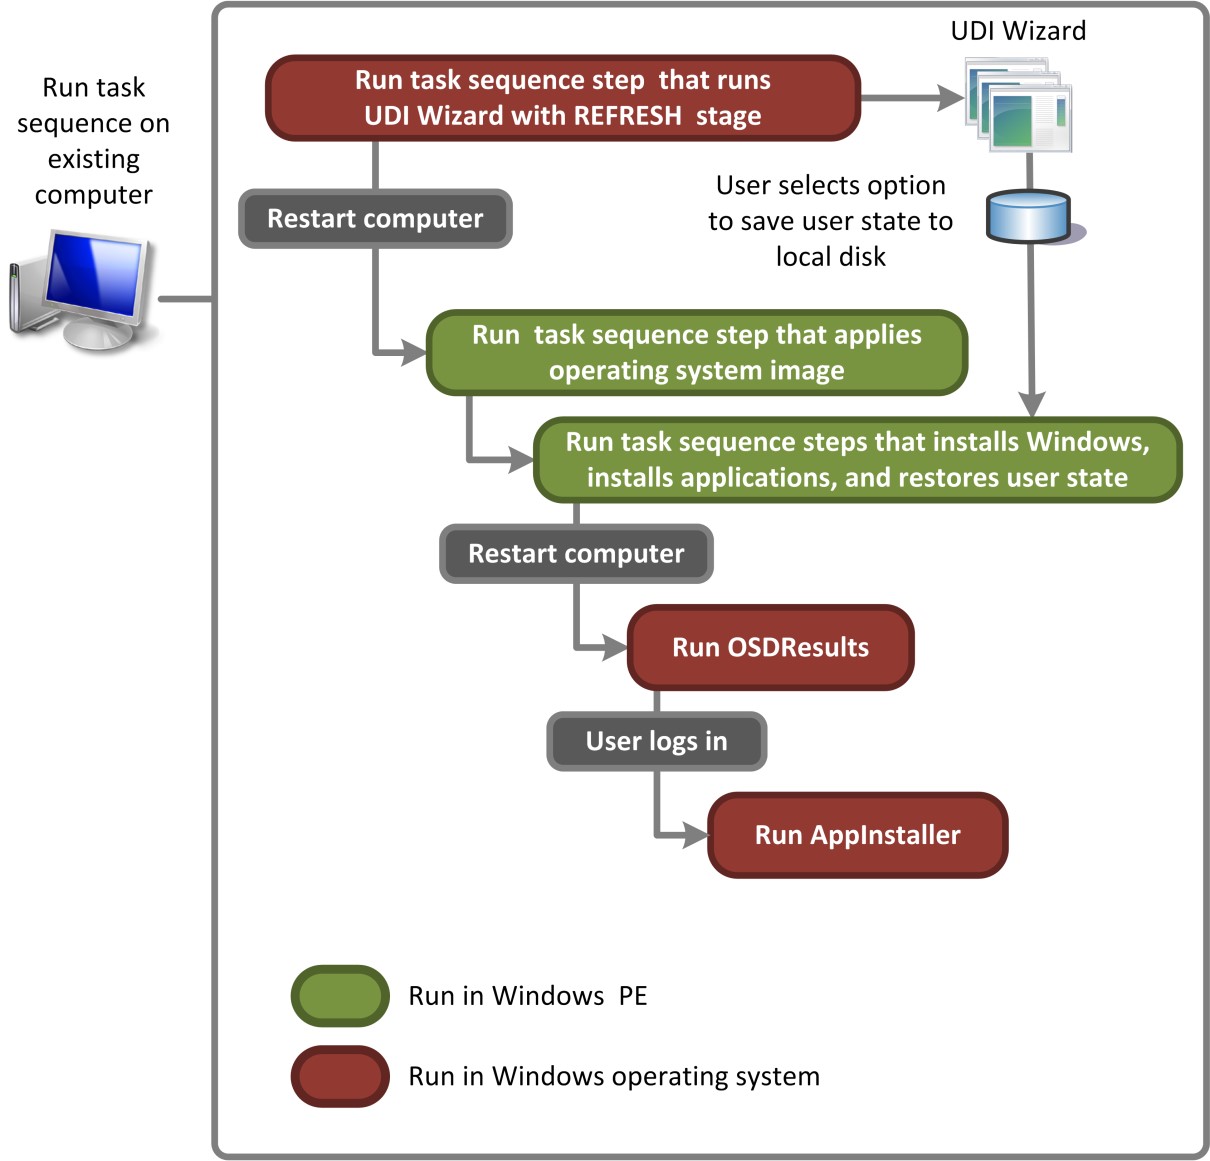 Obrázek 4. Tok procesu pro uživatelsky definovaný typ, který provádí scénář nasazení aktualizovat počítač